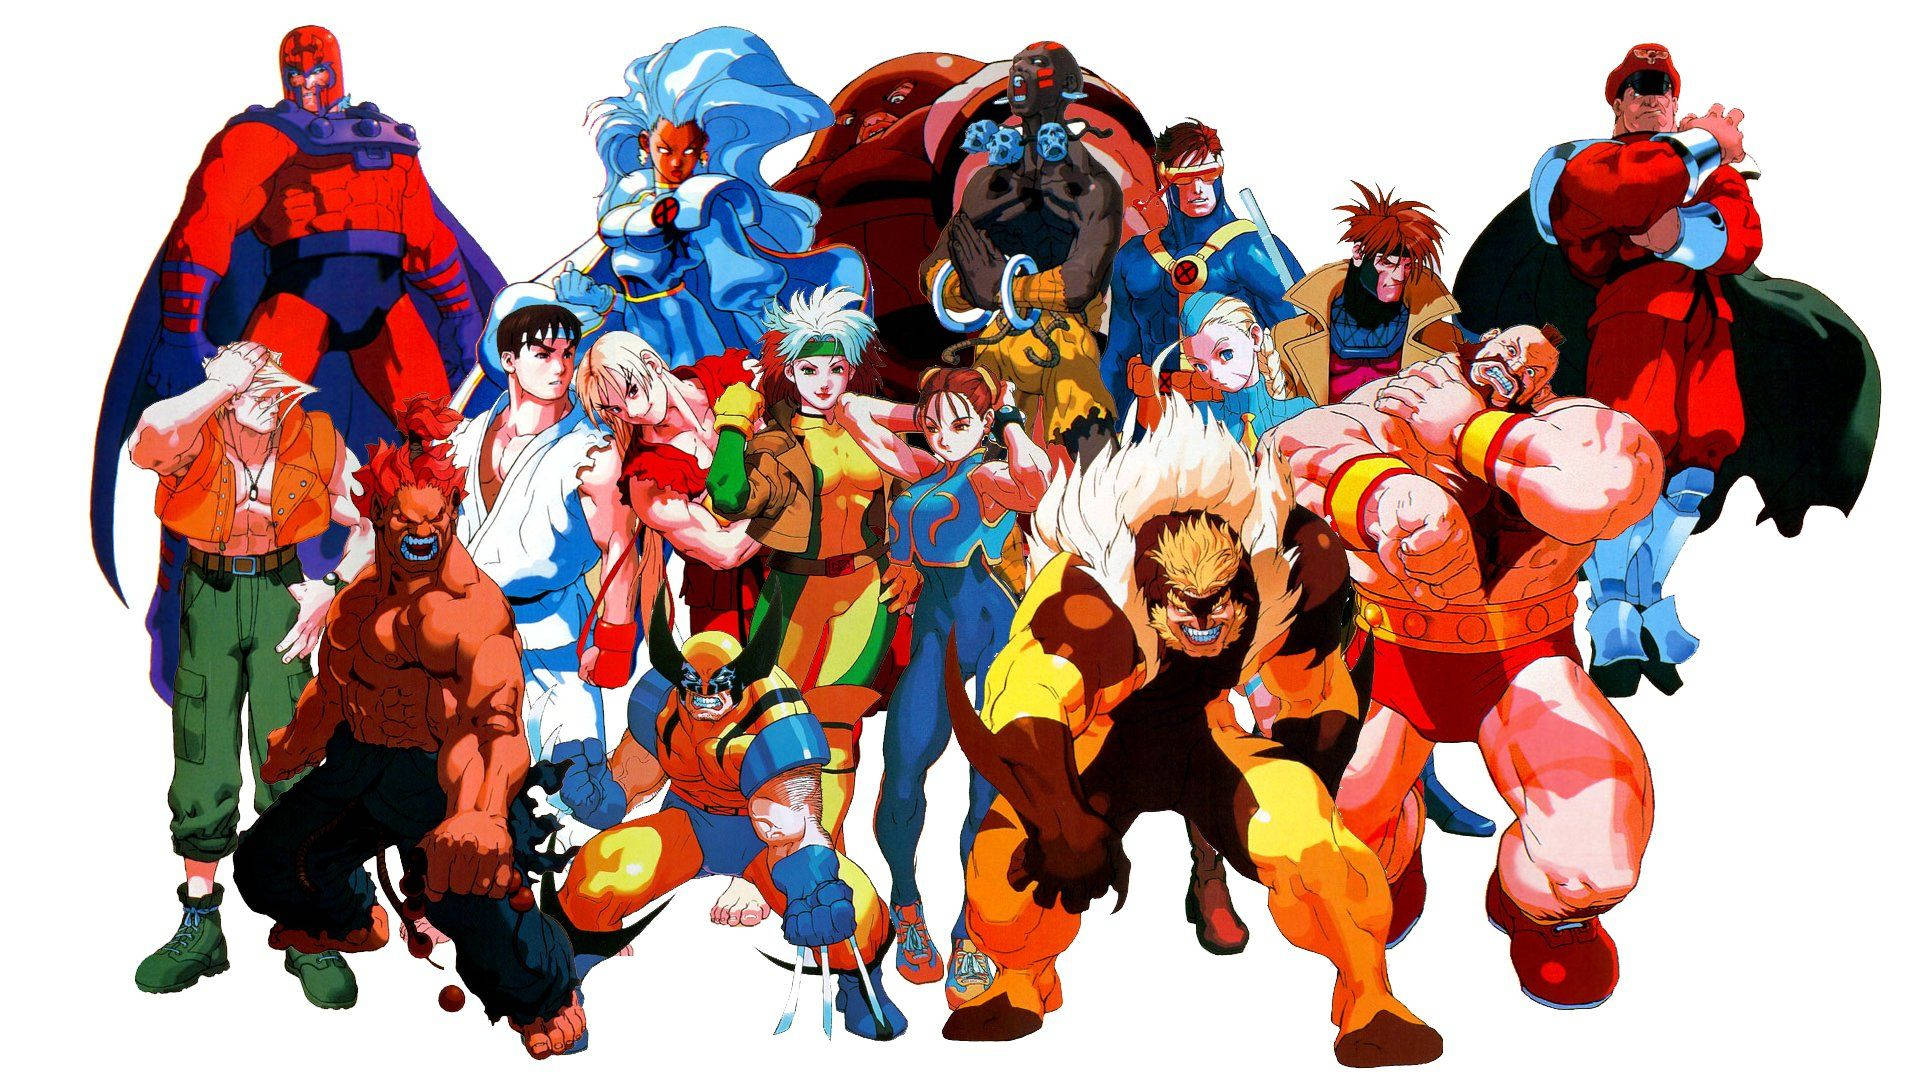 X-men Versus Street Fighter Characters